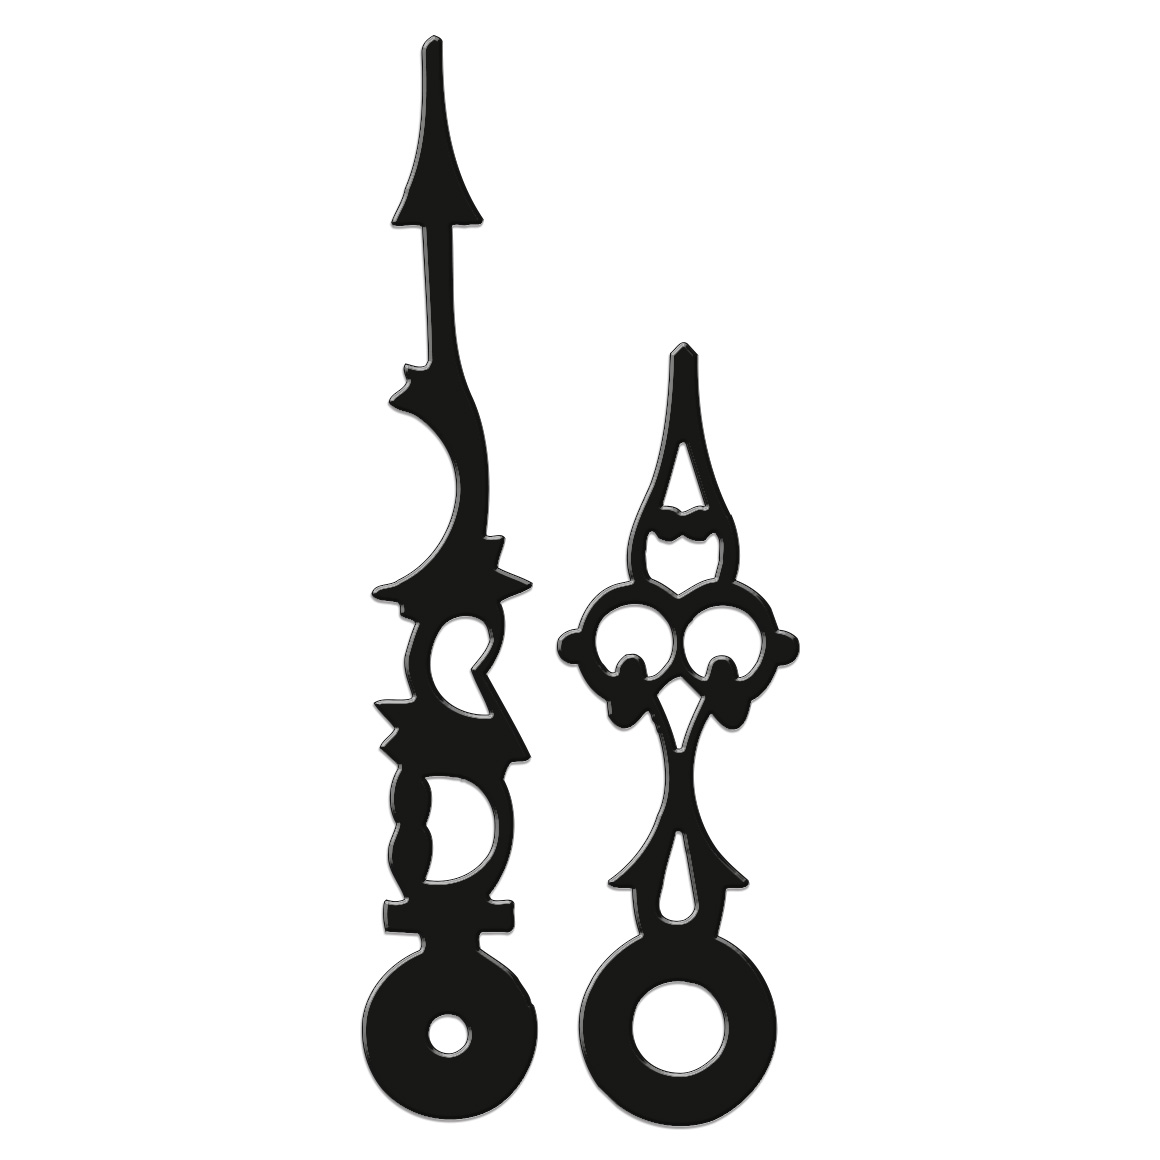 Zeigerpaar, antike Form, L 87 mm, Alu schwarz, Euro-Lochung